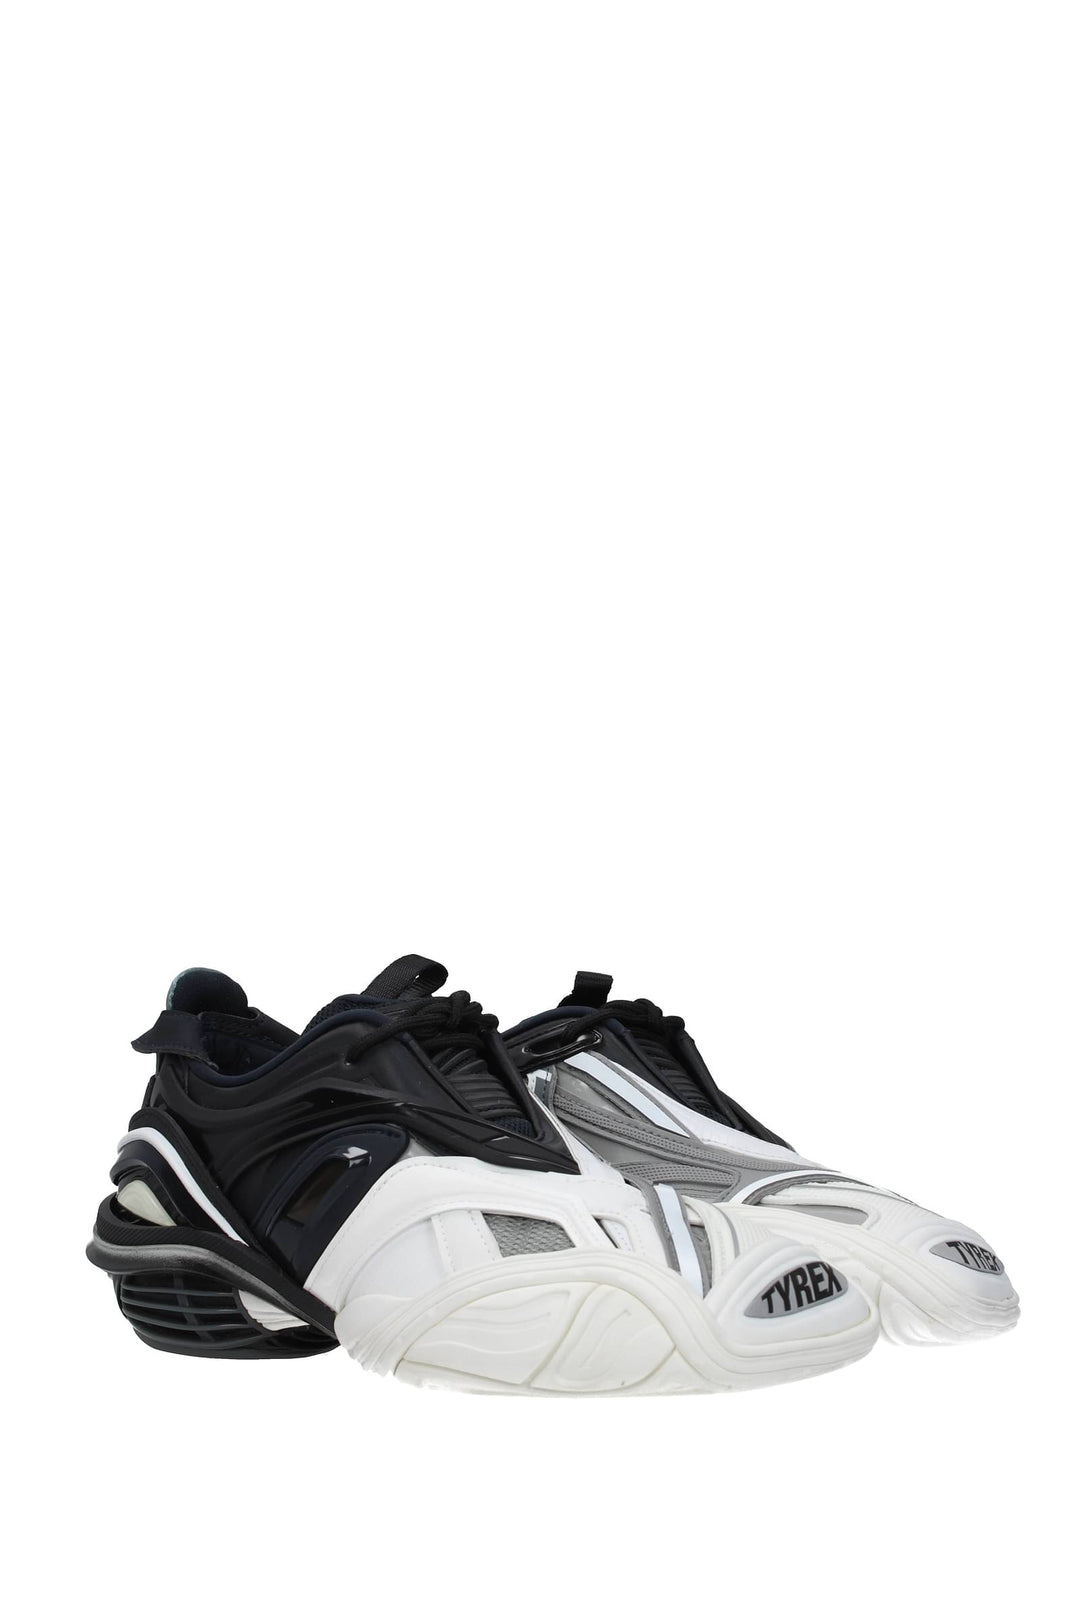 Sneakers Tyrex Tessuto Bianco Nero - Balenciaga - Donna